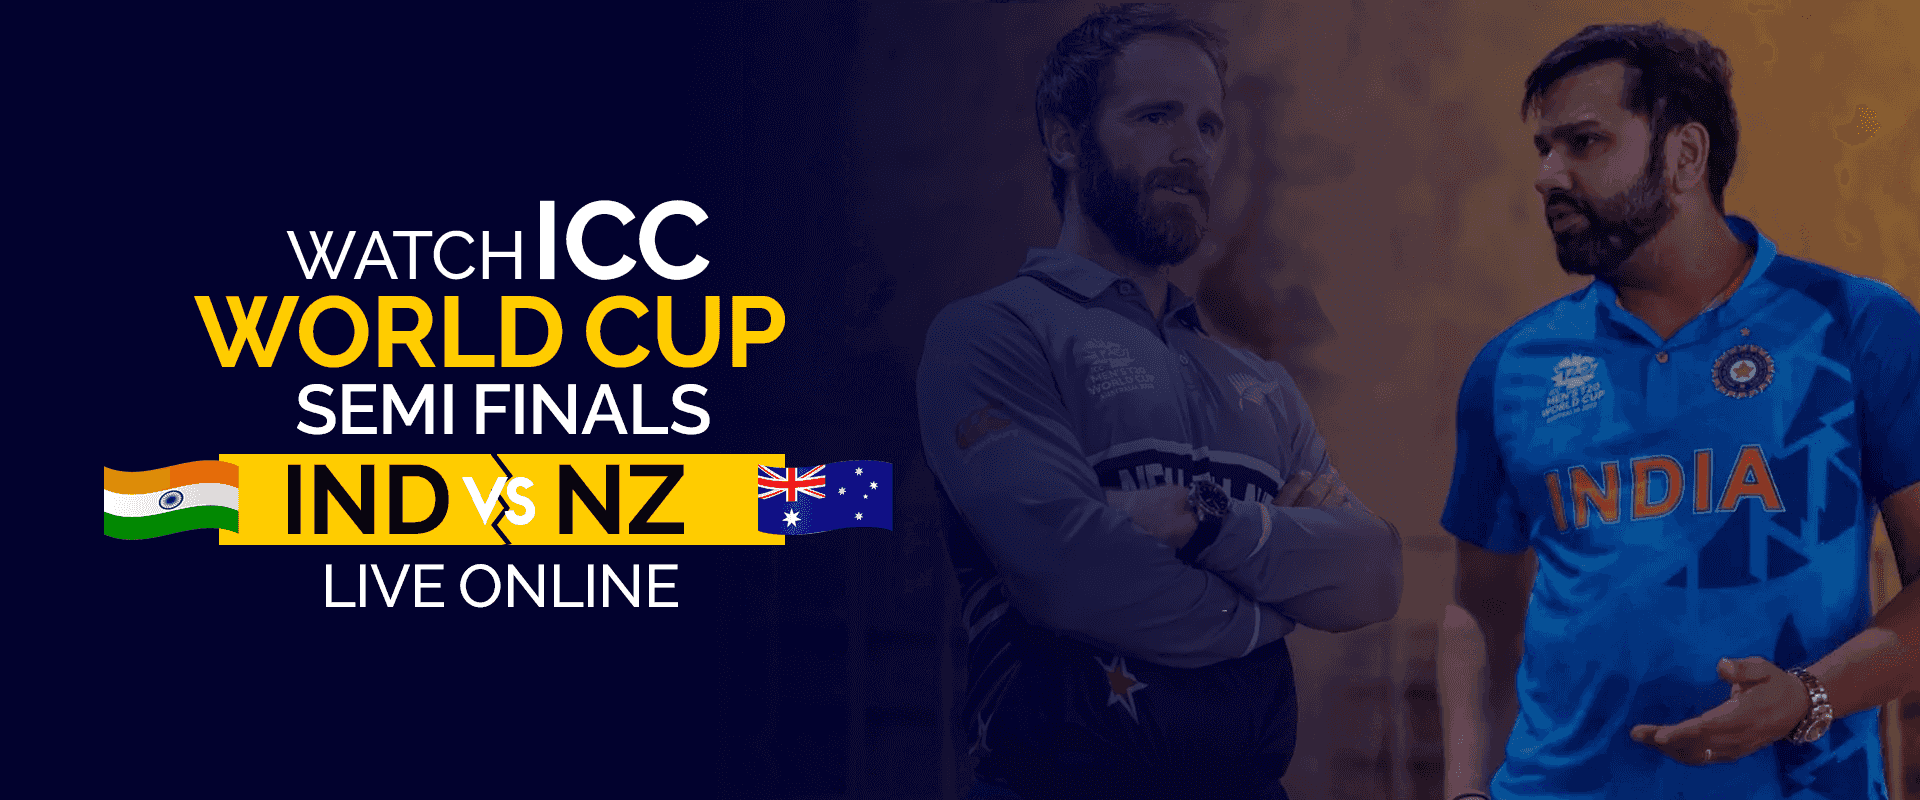 Vea las semifinales de la Copa Mundial ICC IND vs NZ en vivo en línea